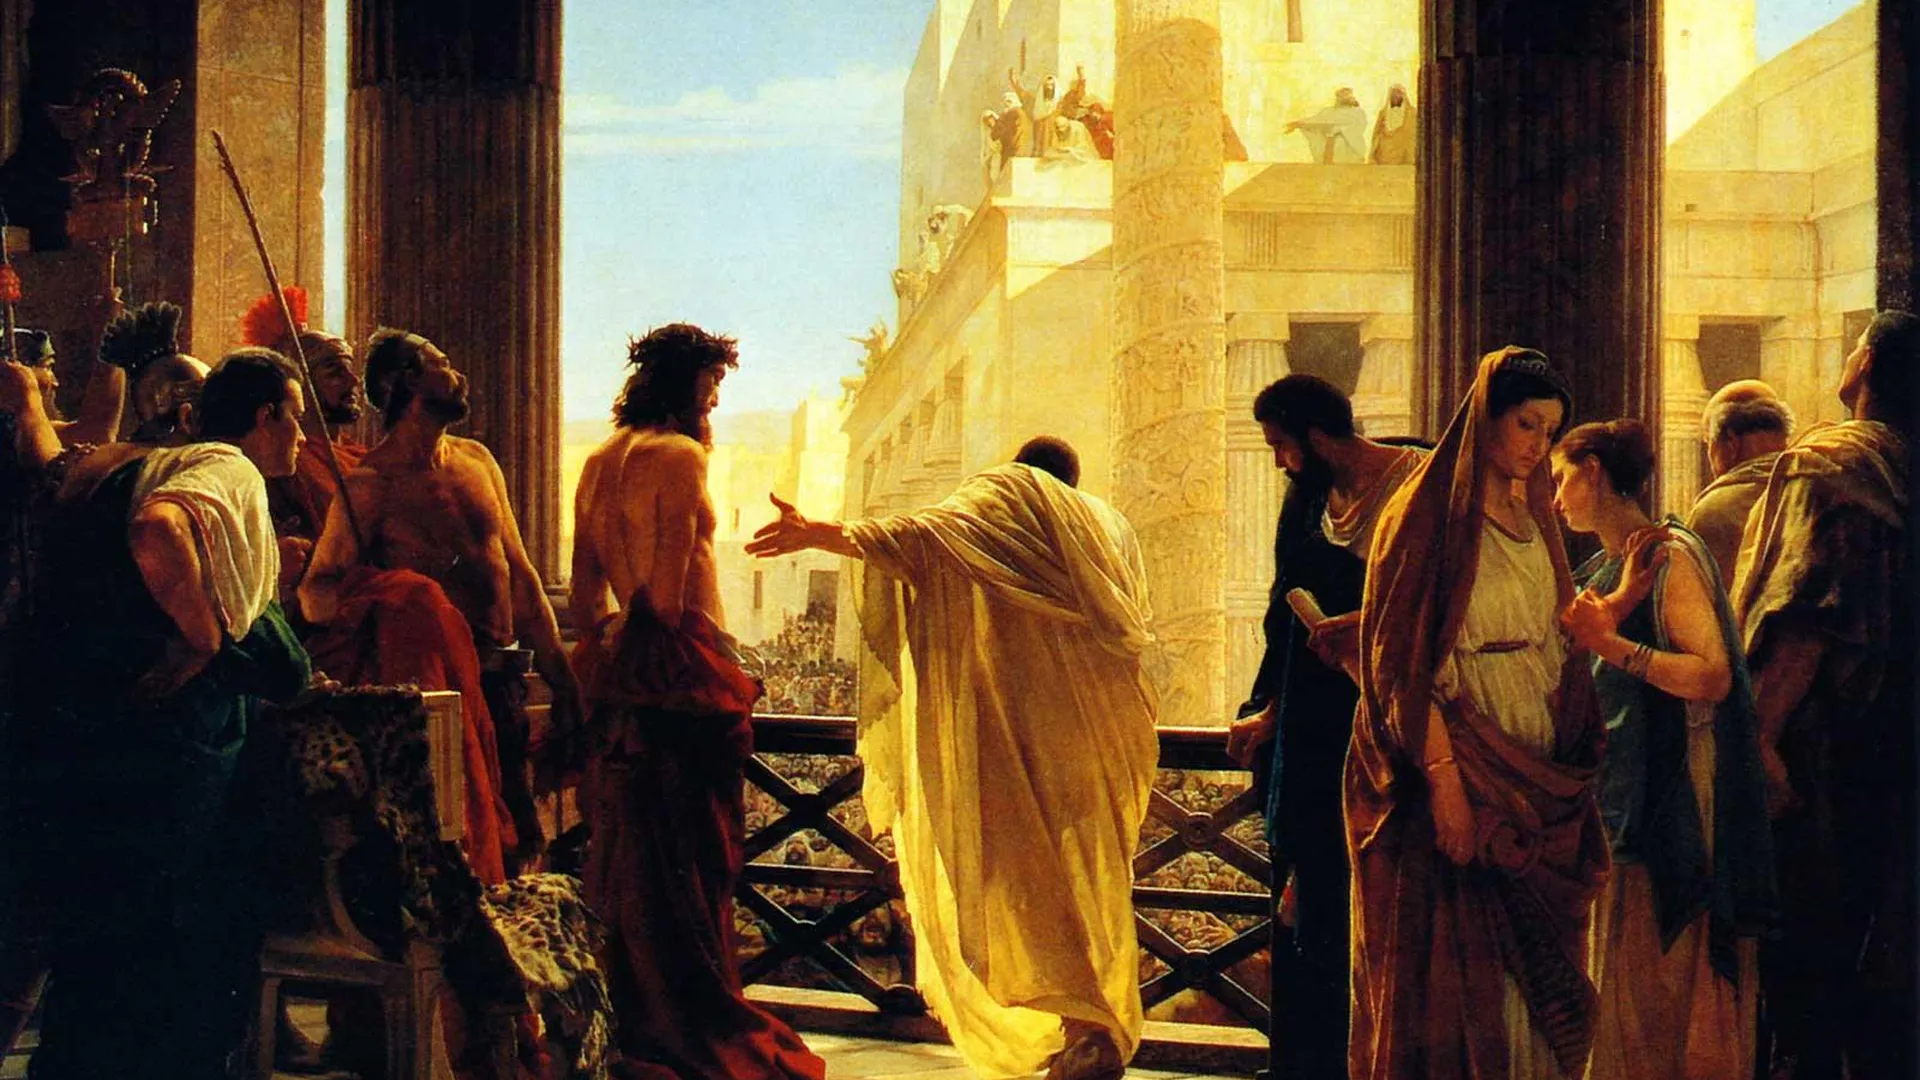 Пилат обращается к толпе иудеев, призывая помиловать Христа, Антонио Чизери, 1862